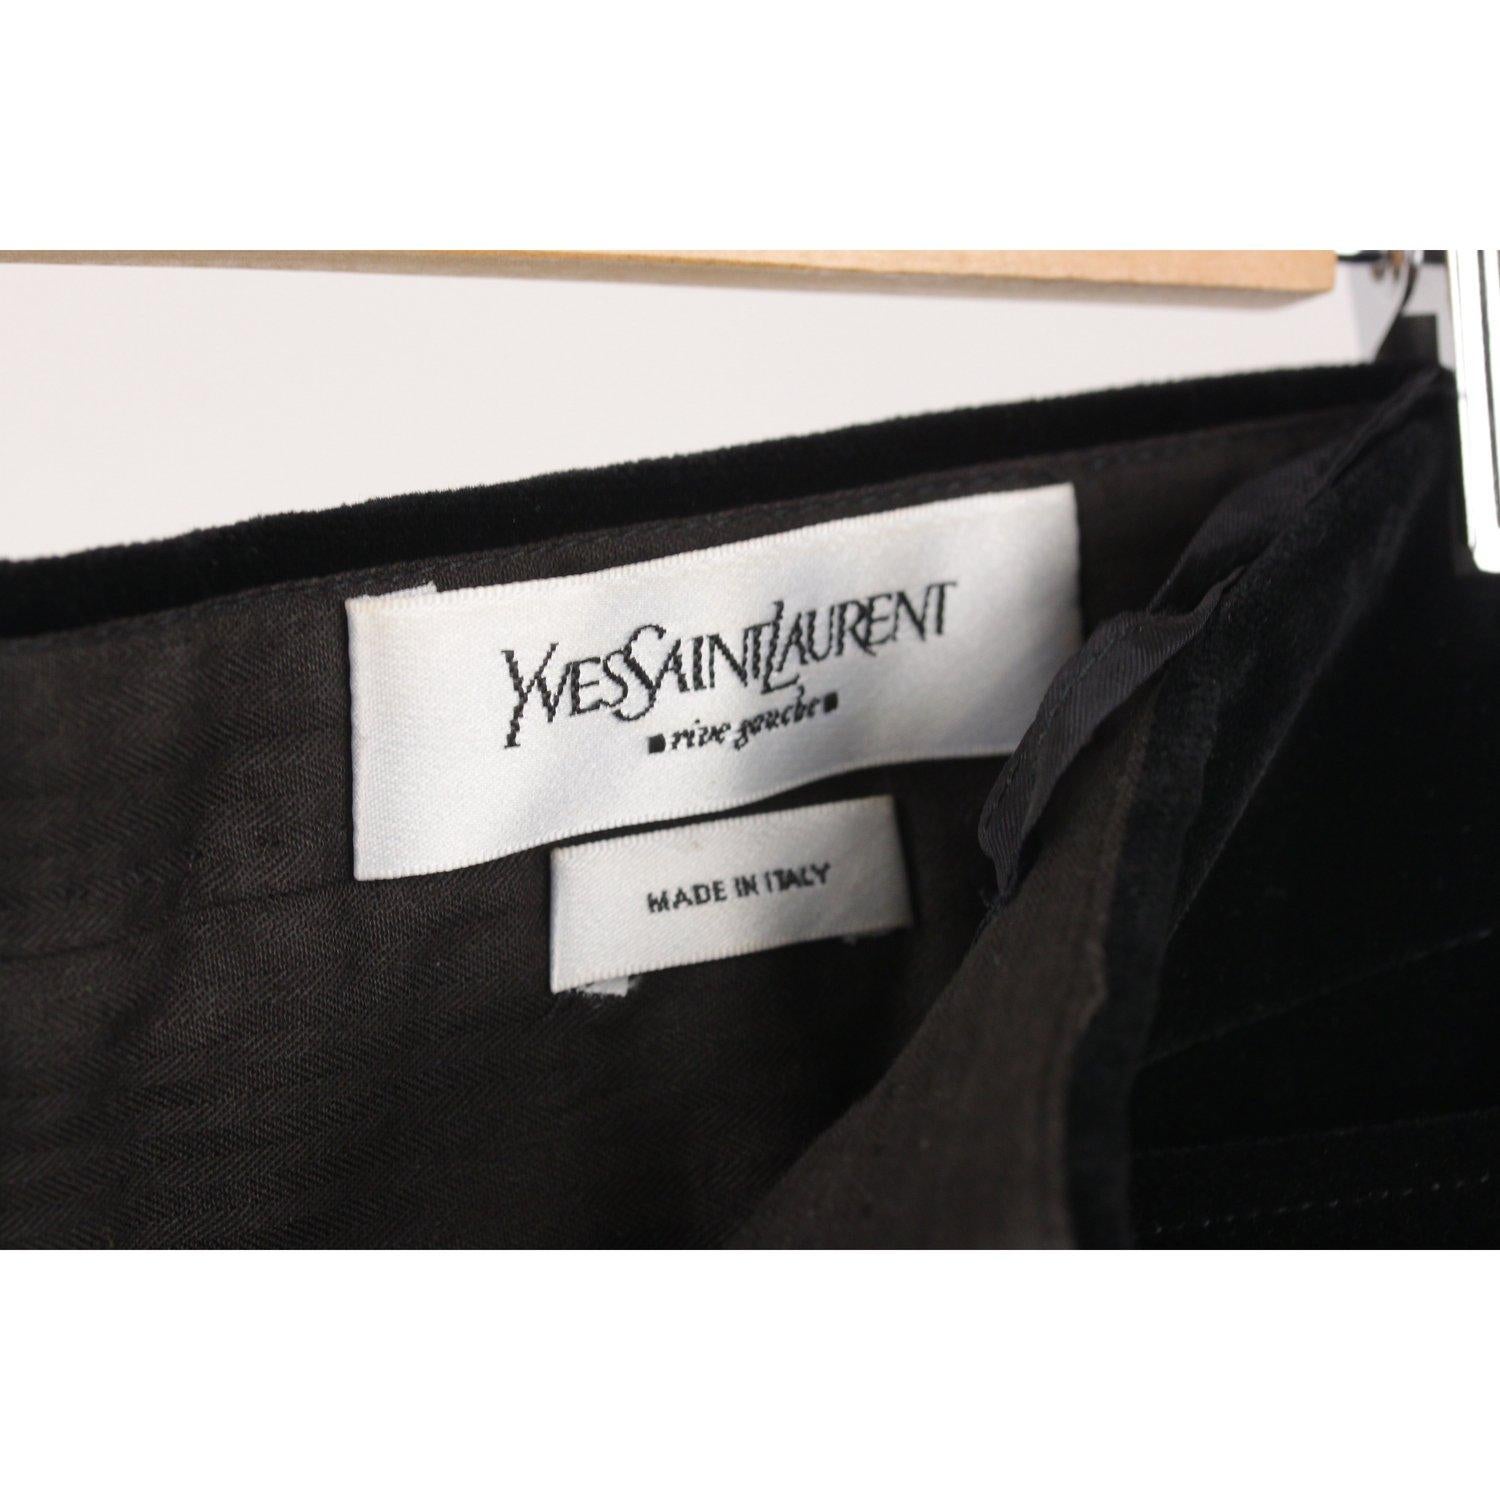 Yves Saint Laurent Velvet Pants Lace Up Detail Size 38 1